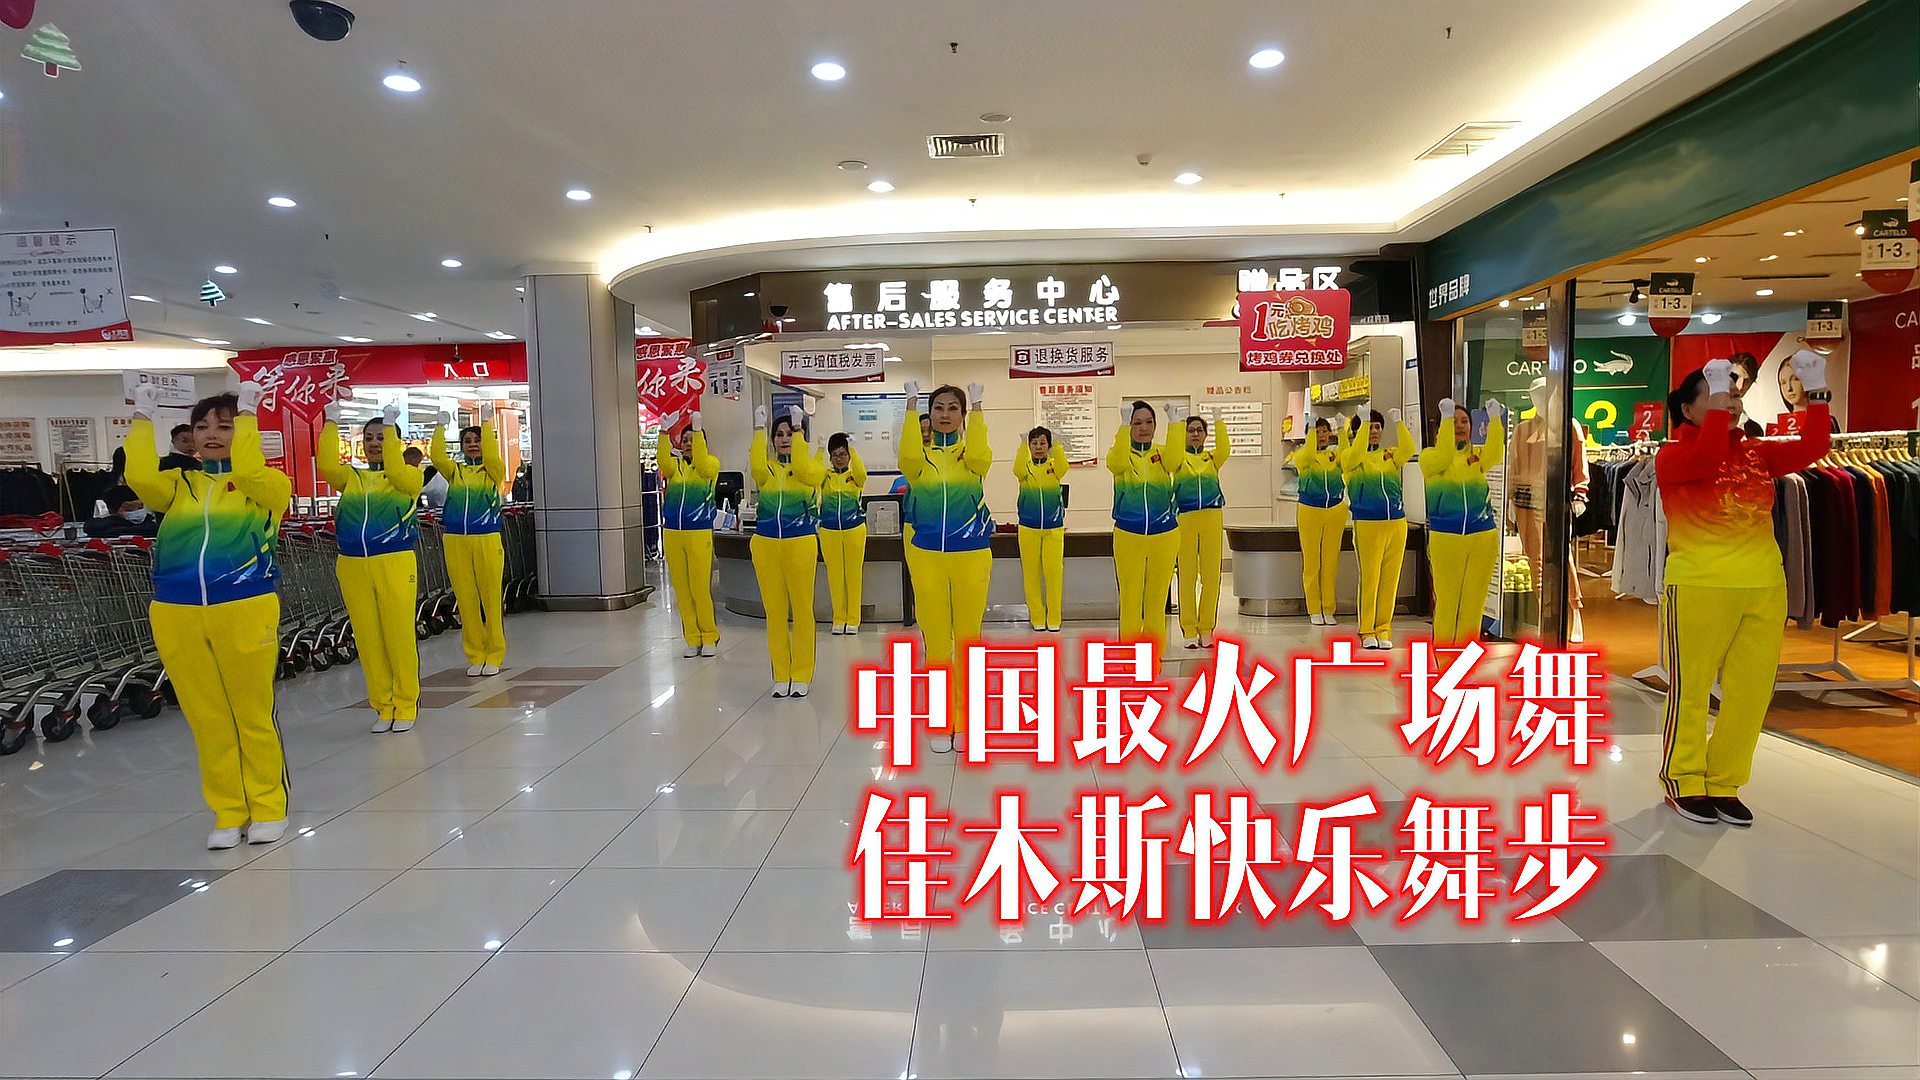 中国最火广场舞,佳木斯行进有氧健身操,激昂旋律走着健康步伐!